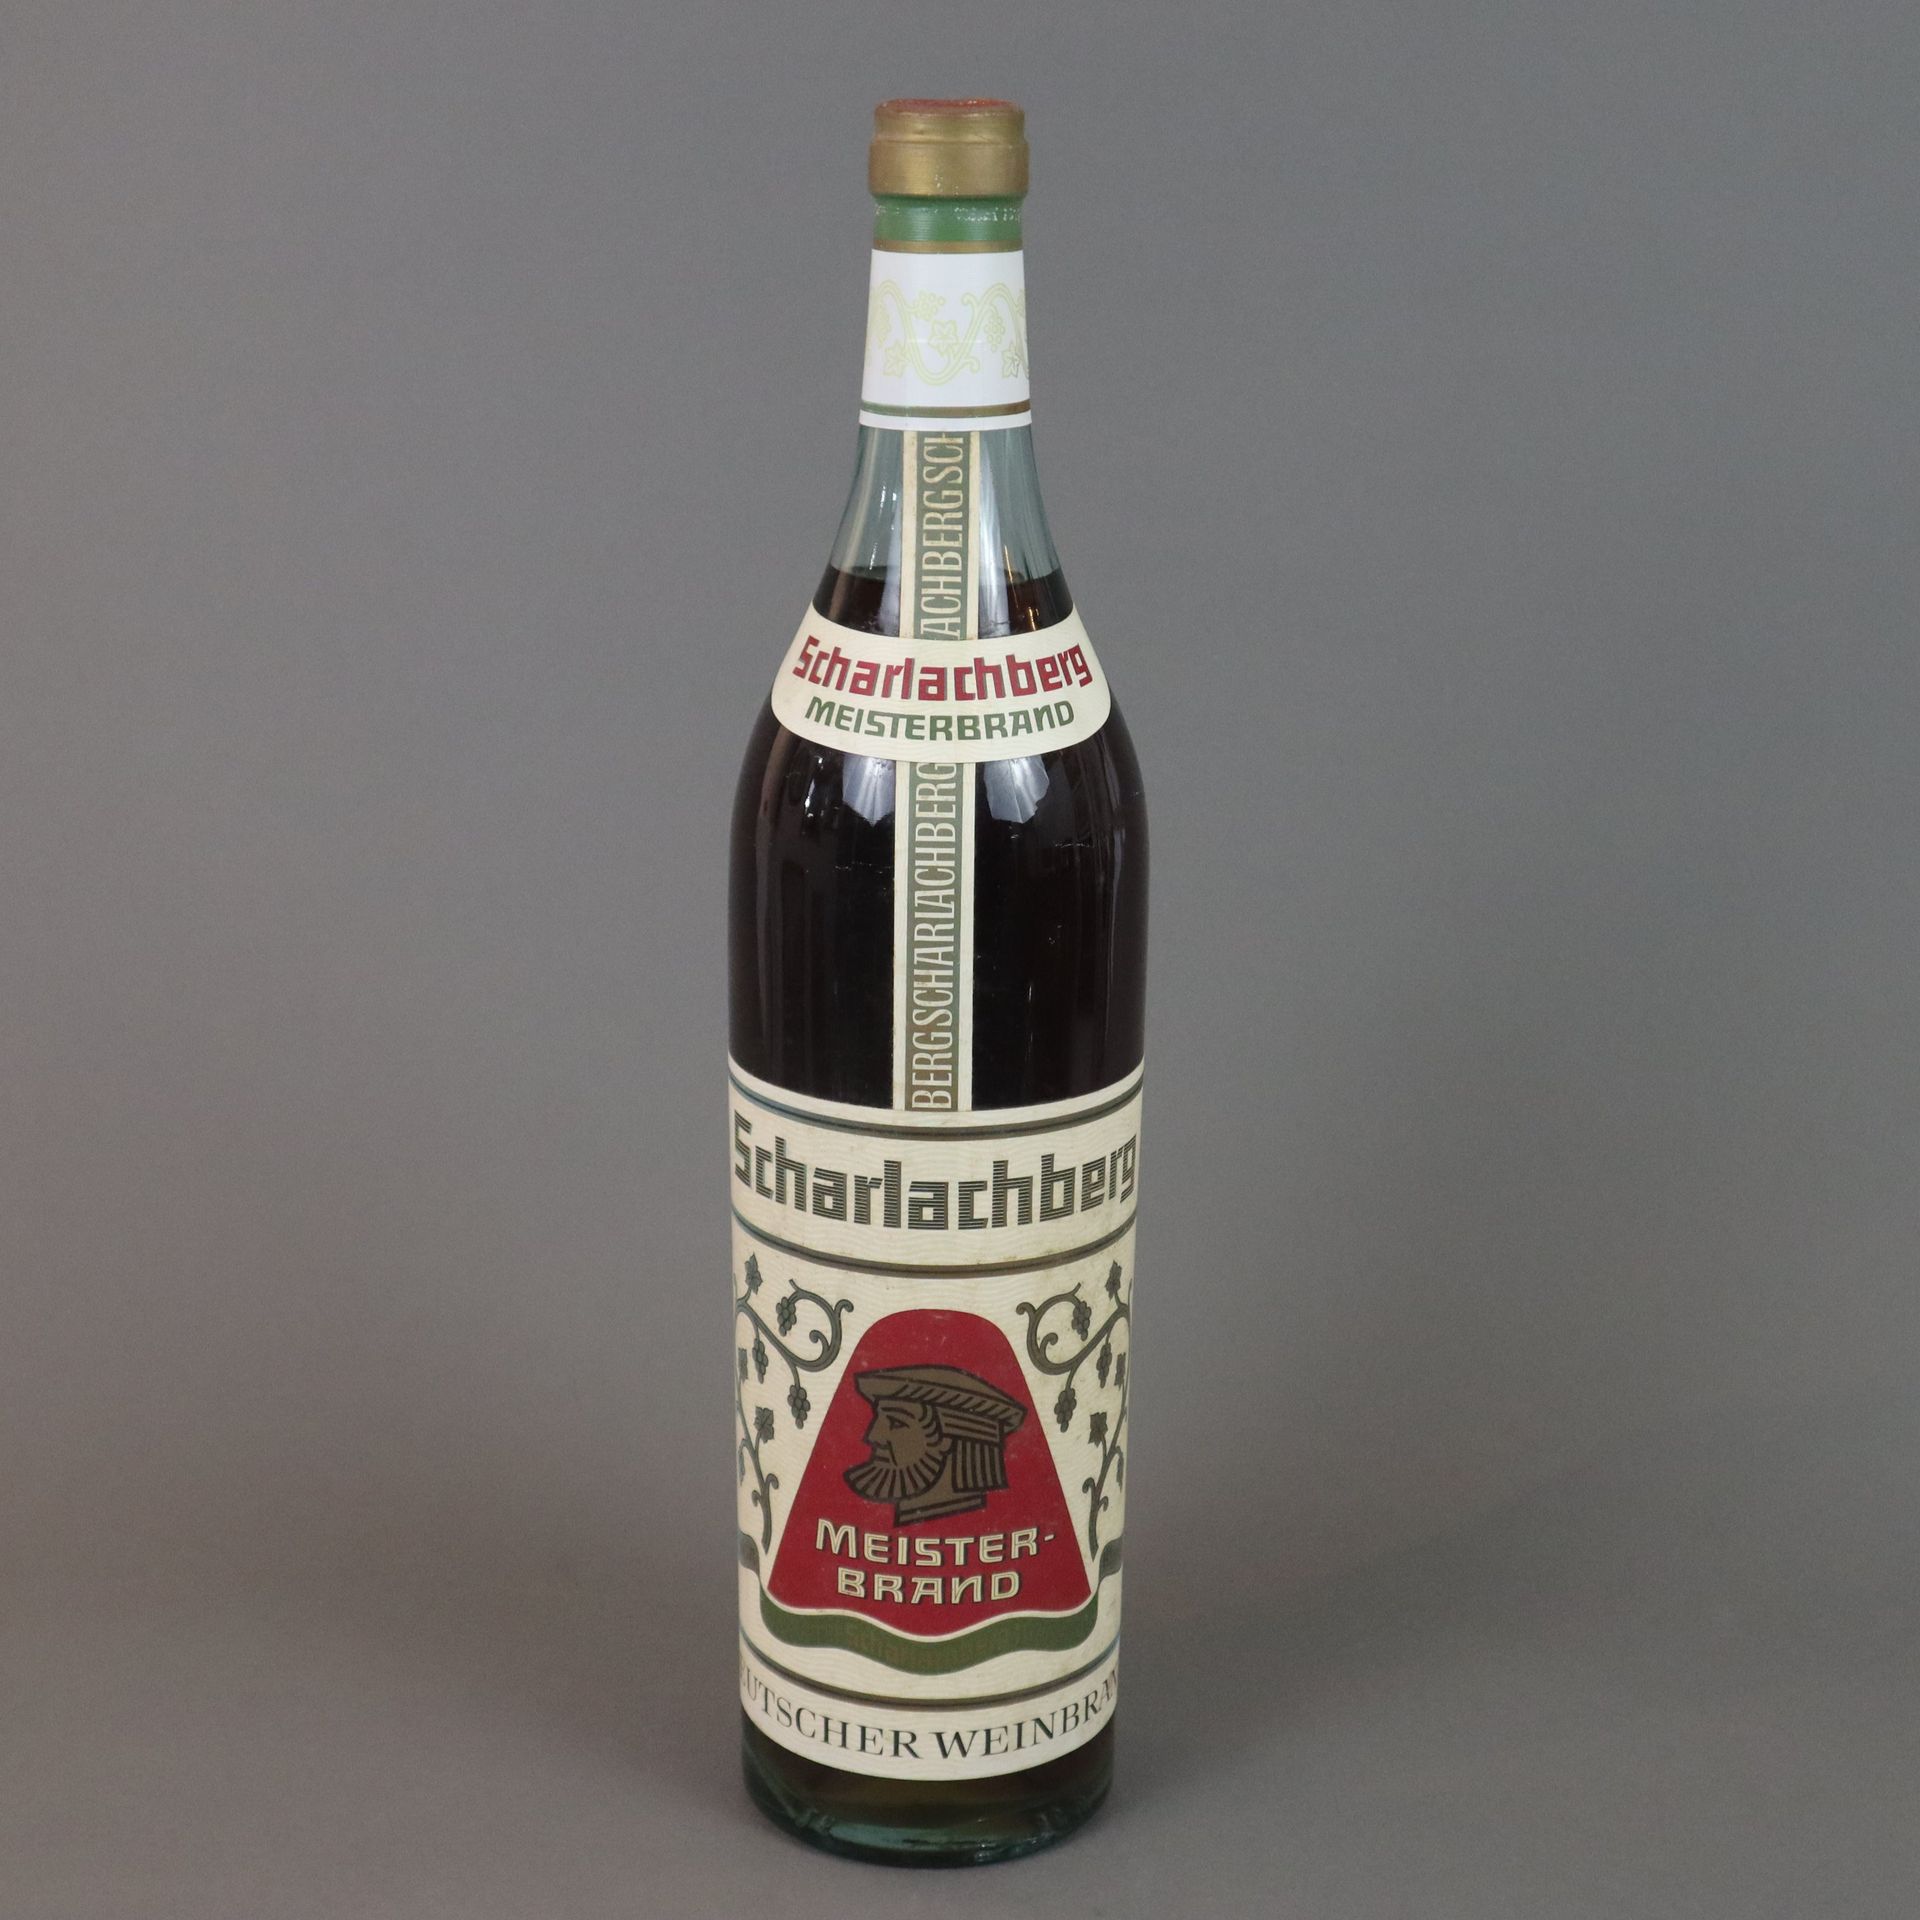 Null Brandy - Scharlachberg, Meisterbrand, Bingen am Rhein, German brandy, witho&hellip;